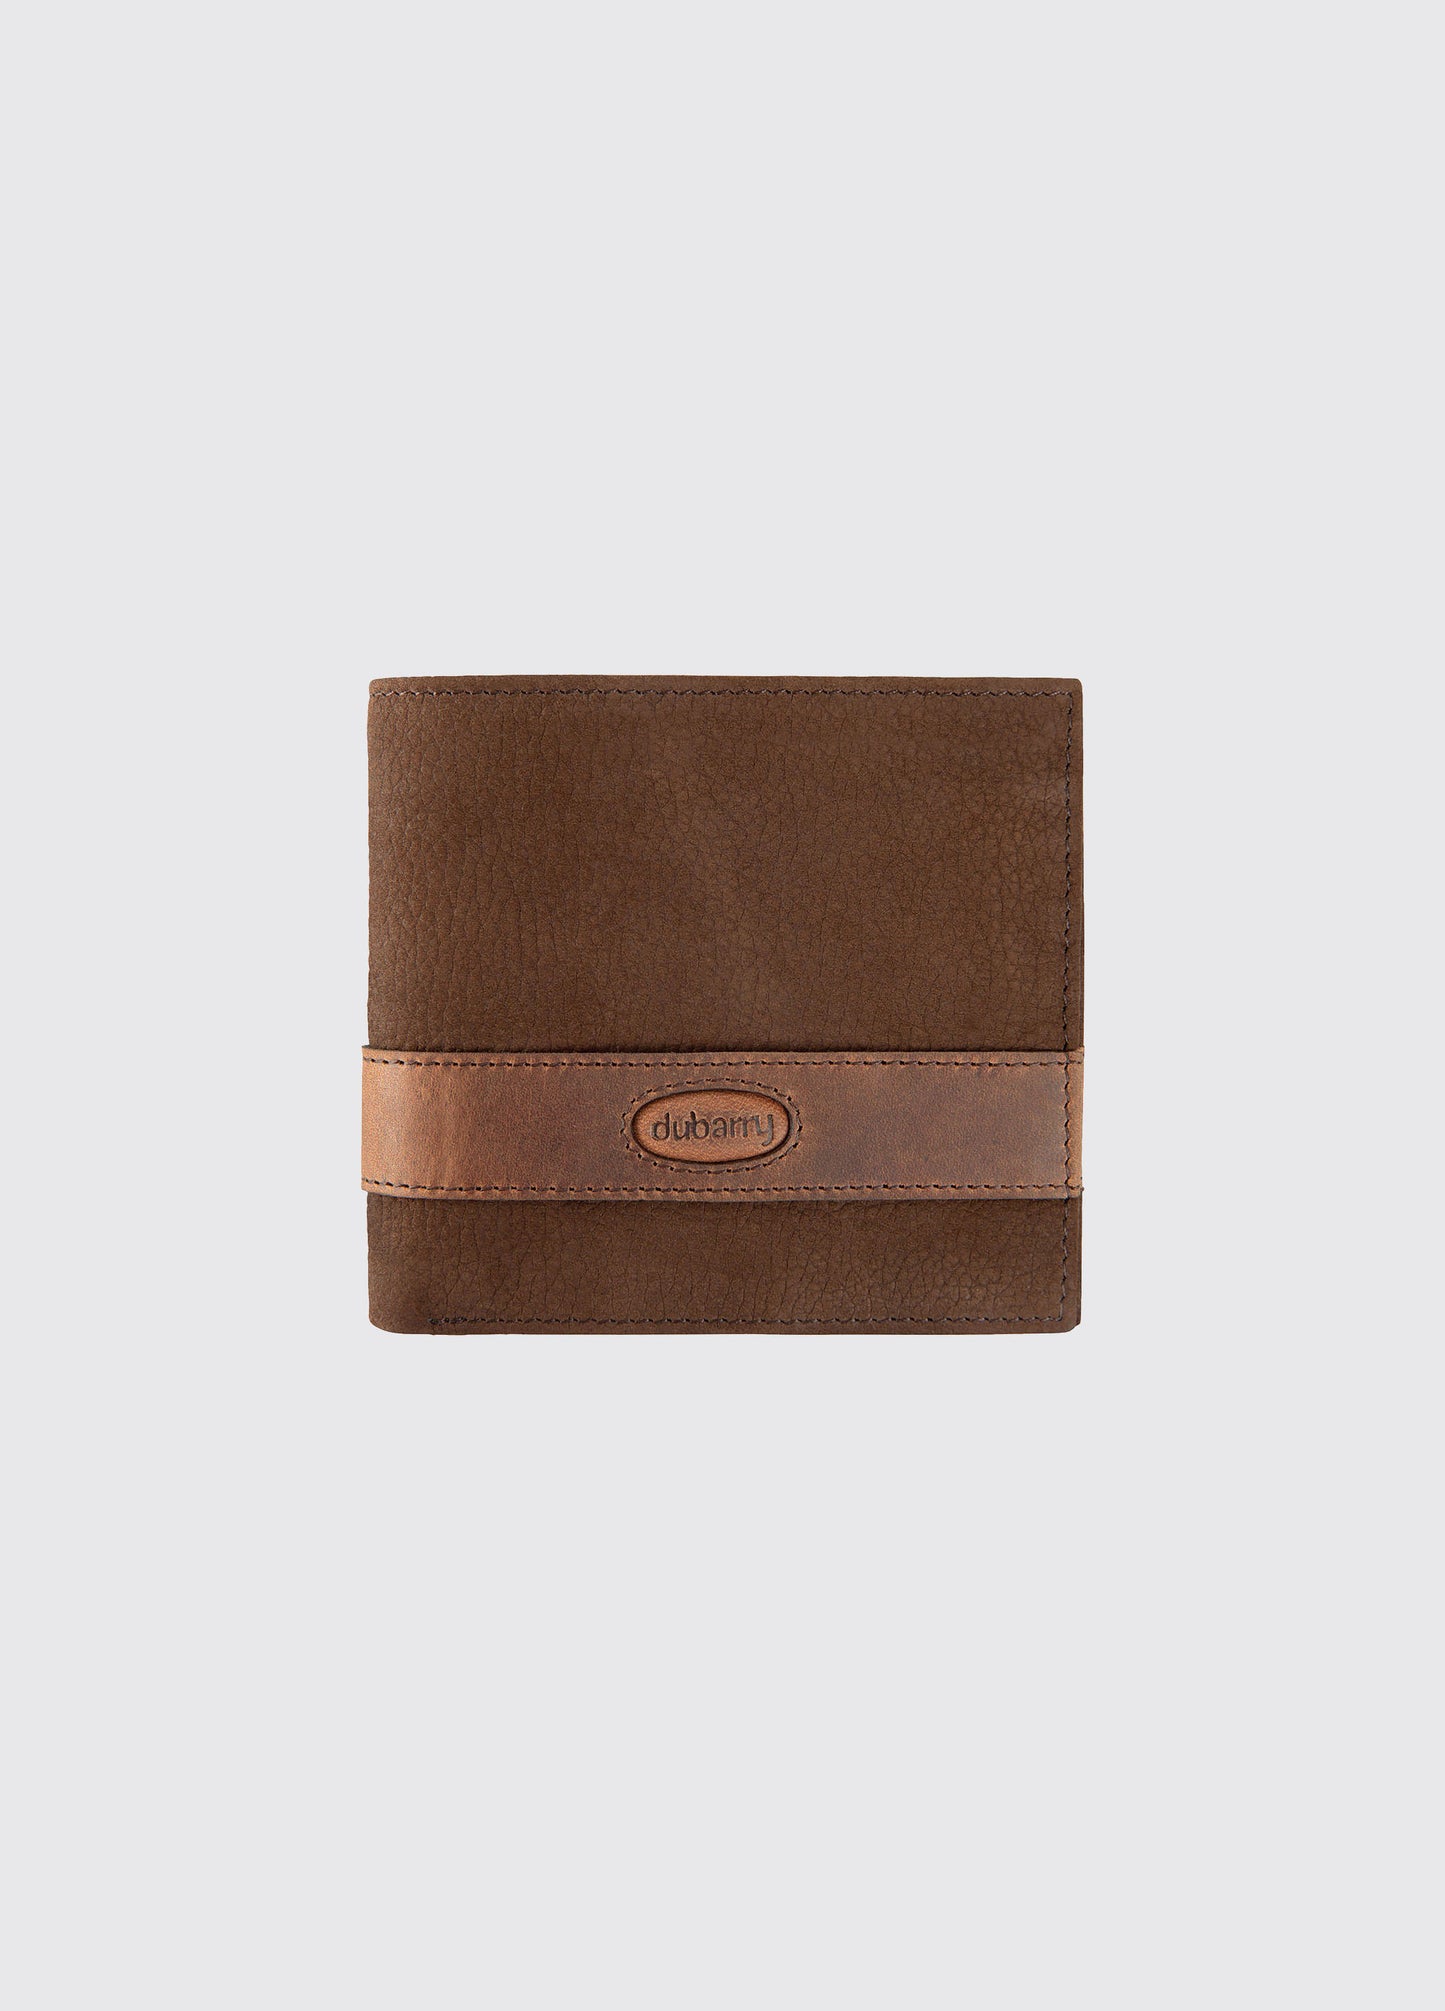 Grafton Leather Walnut Wallet